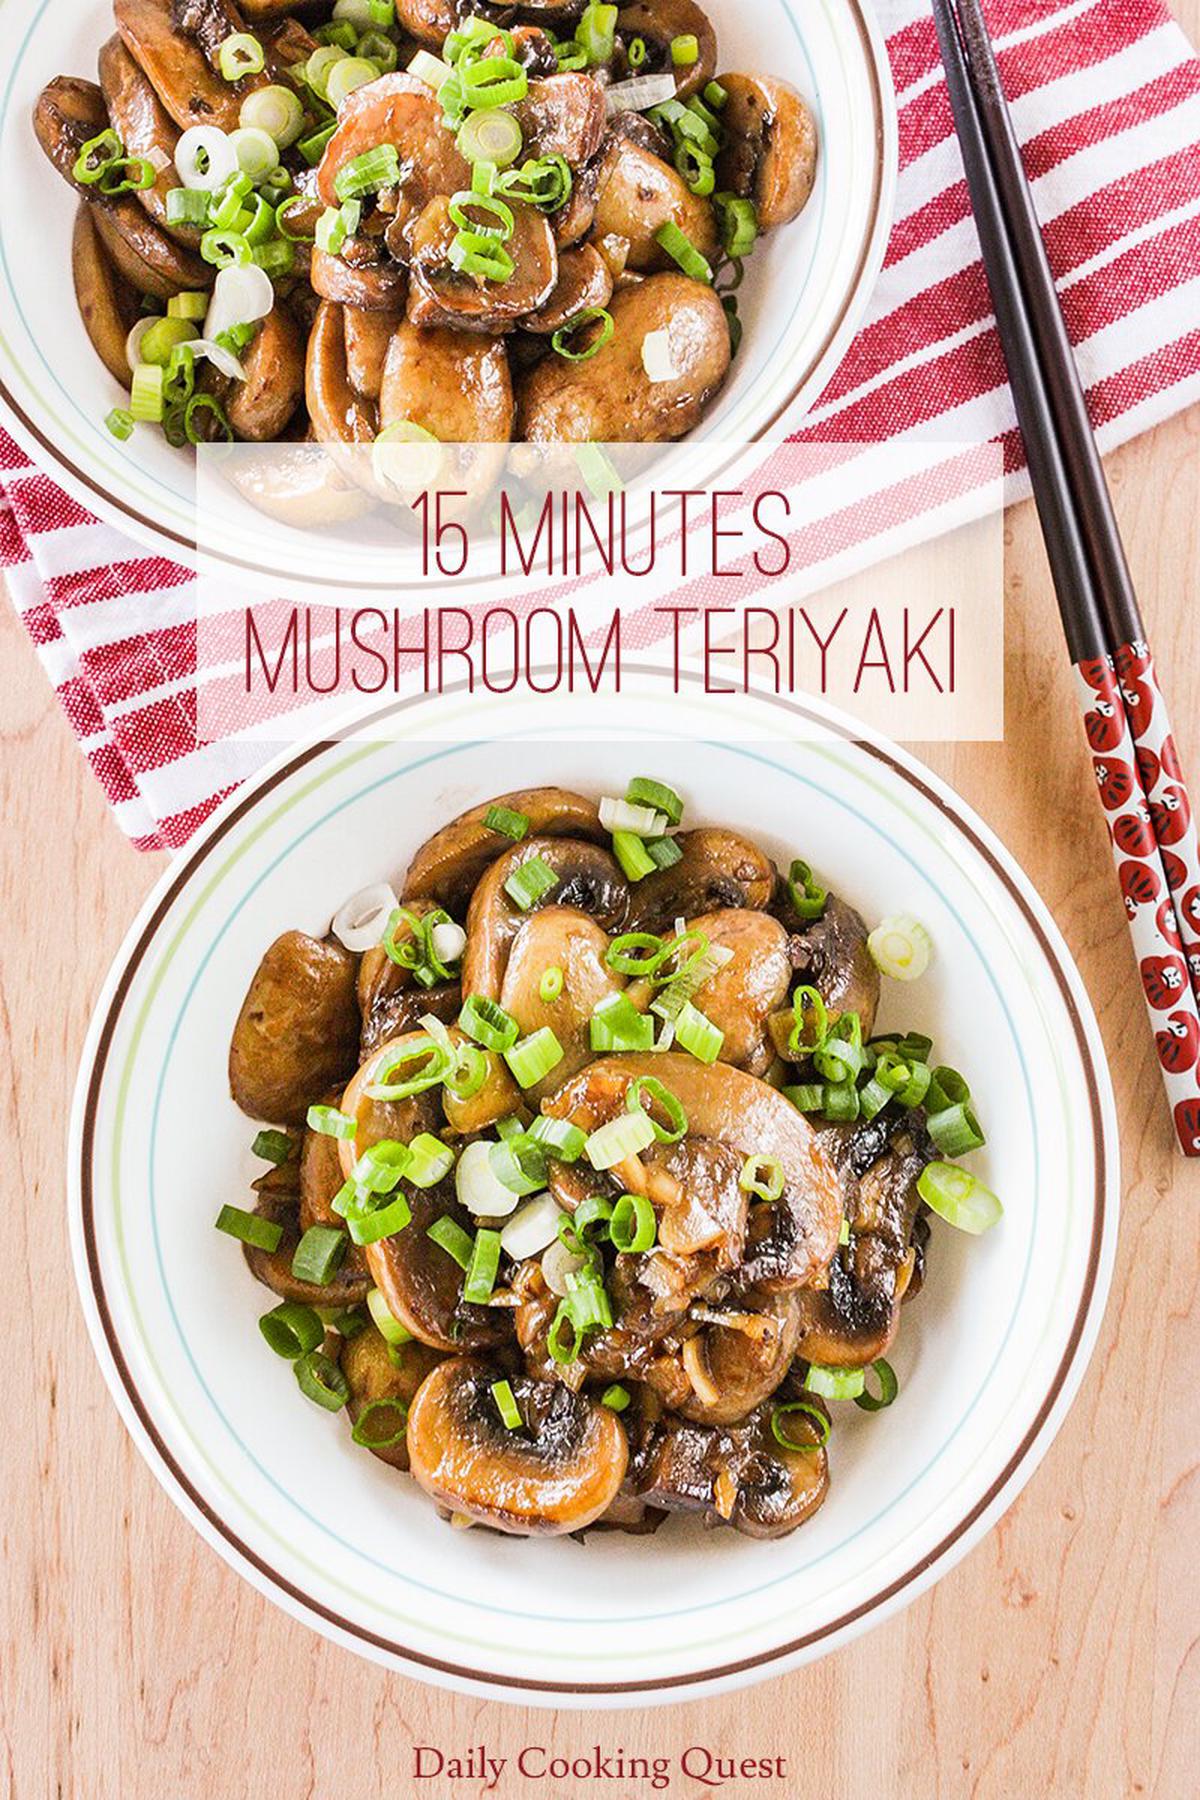 15 Minutes Mushroom Teriyaki